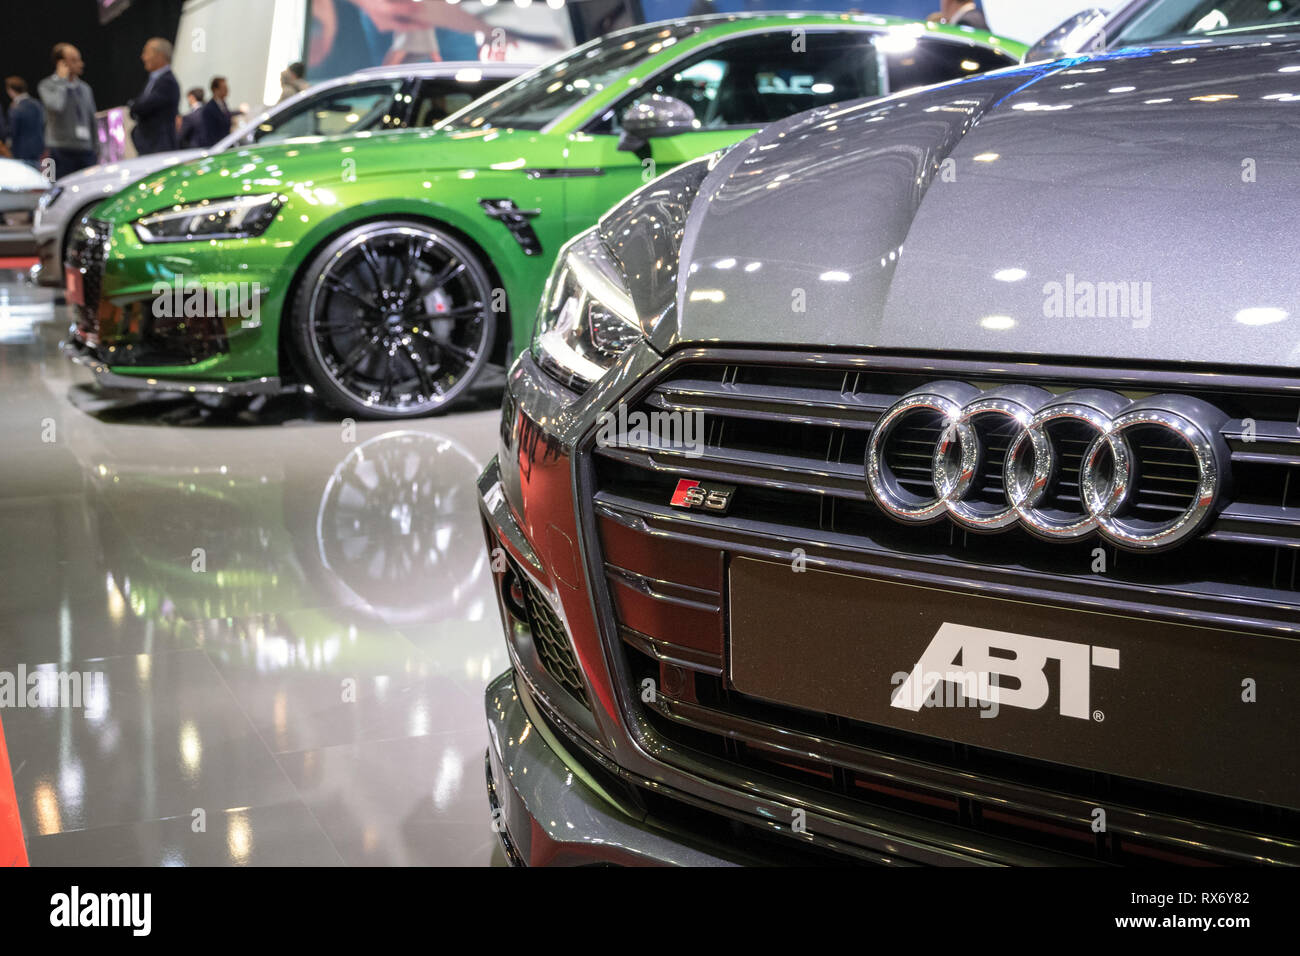 Genf, Schweiz - 8. MÄRZ 2017: Audi RS 3 LMS MTM Tuning Sport Auto auf dem  87. Internationalen Automobilsalon in Genf präsentiert. Auto  Stockfotografie - Alamy